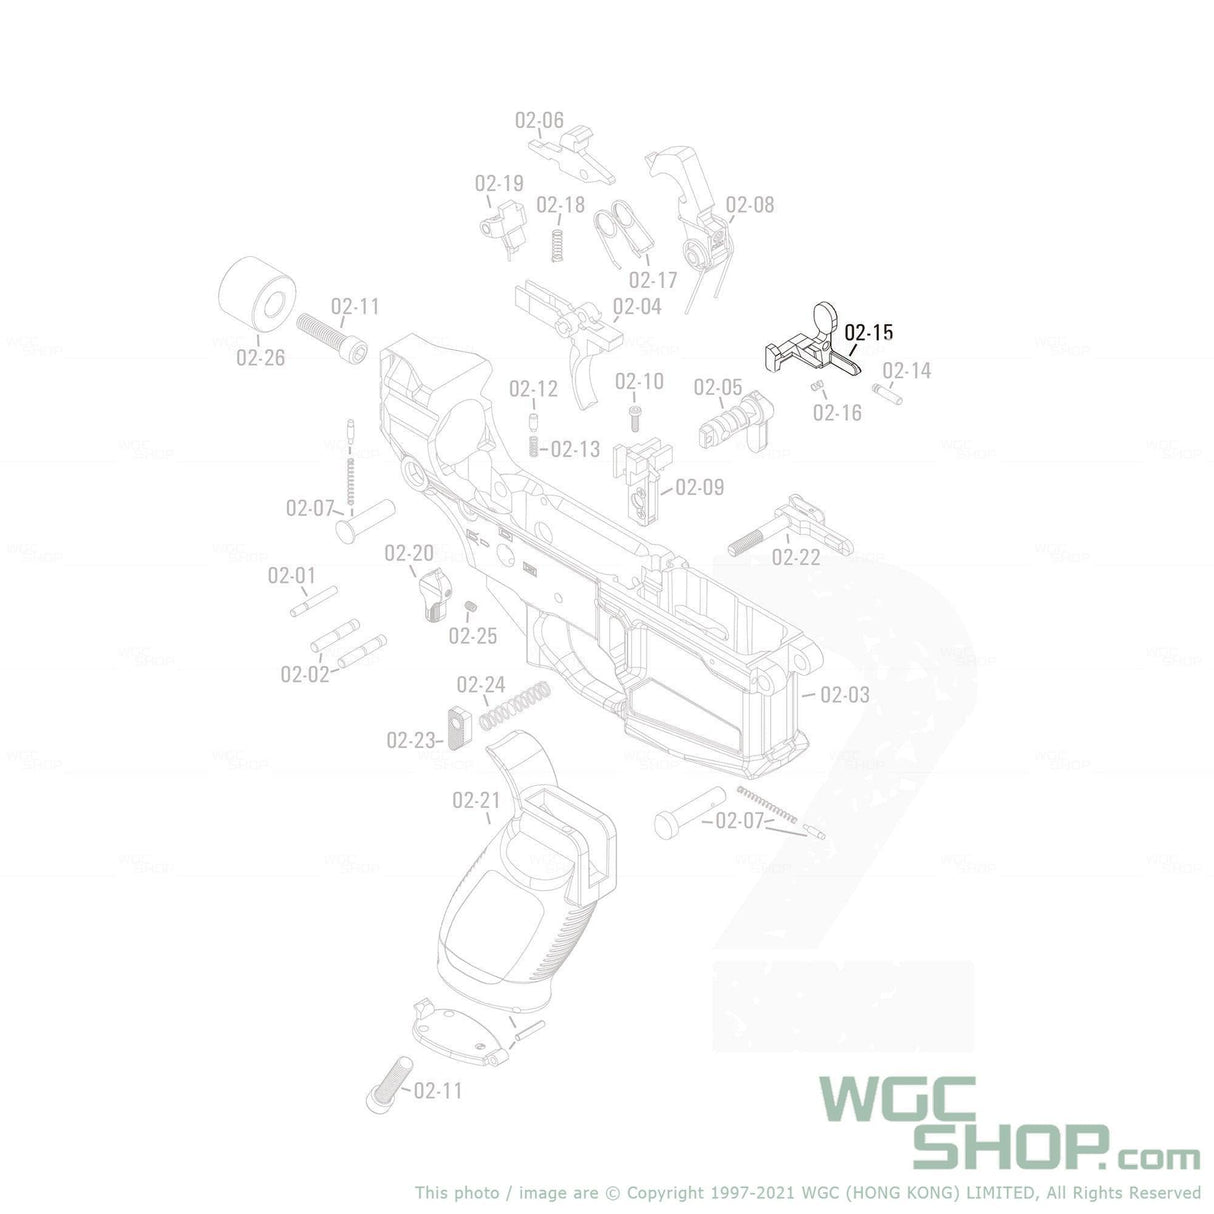 APFG Original Parts - Rattler GBB Bolt Catch ( 02-15 ) - WGC Shop